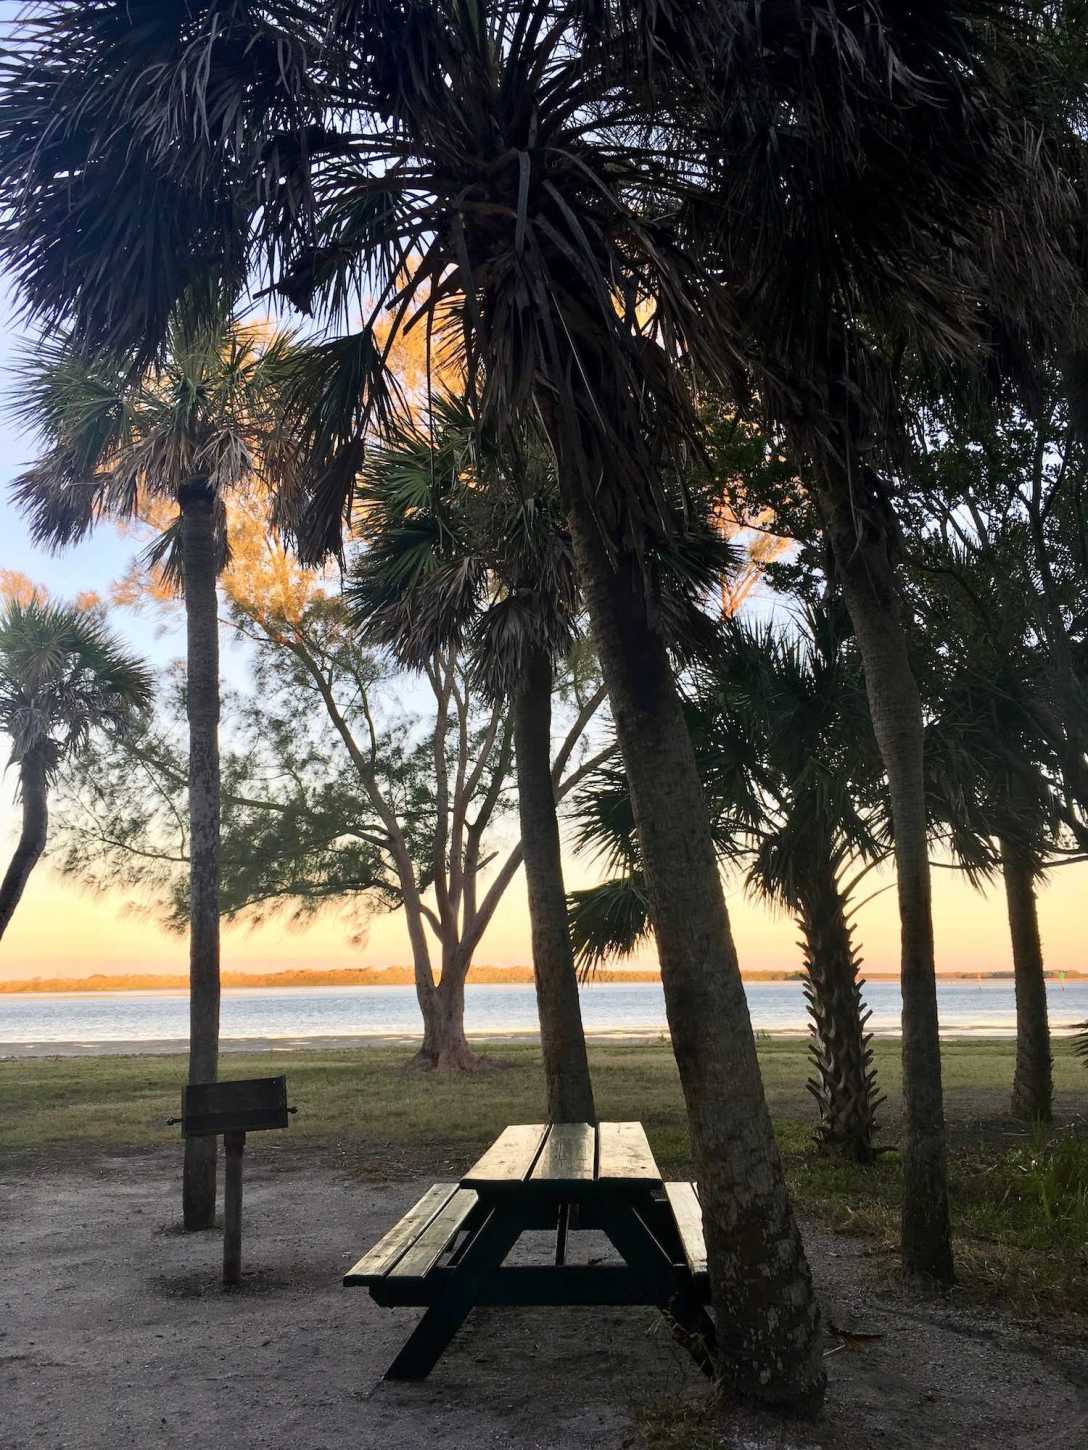 Waterfront campsite at Fort De Soto Park near St. Pete, Florida